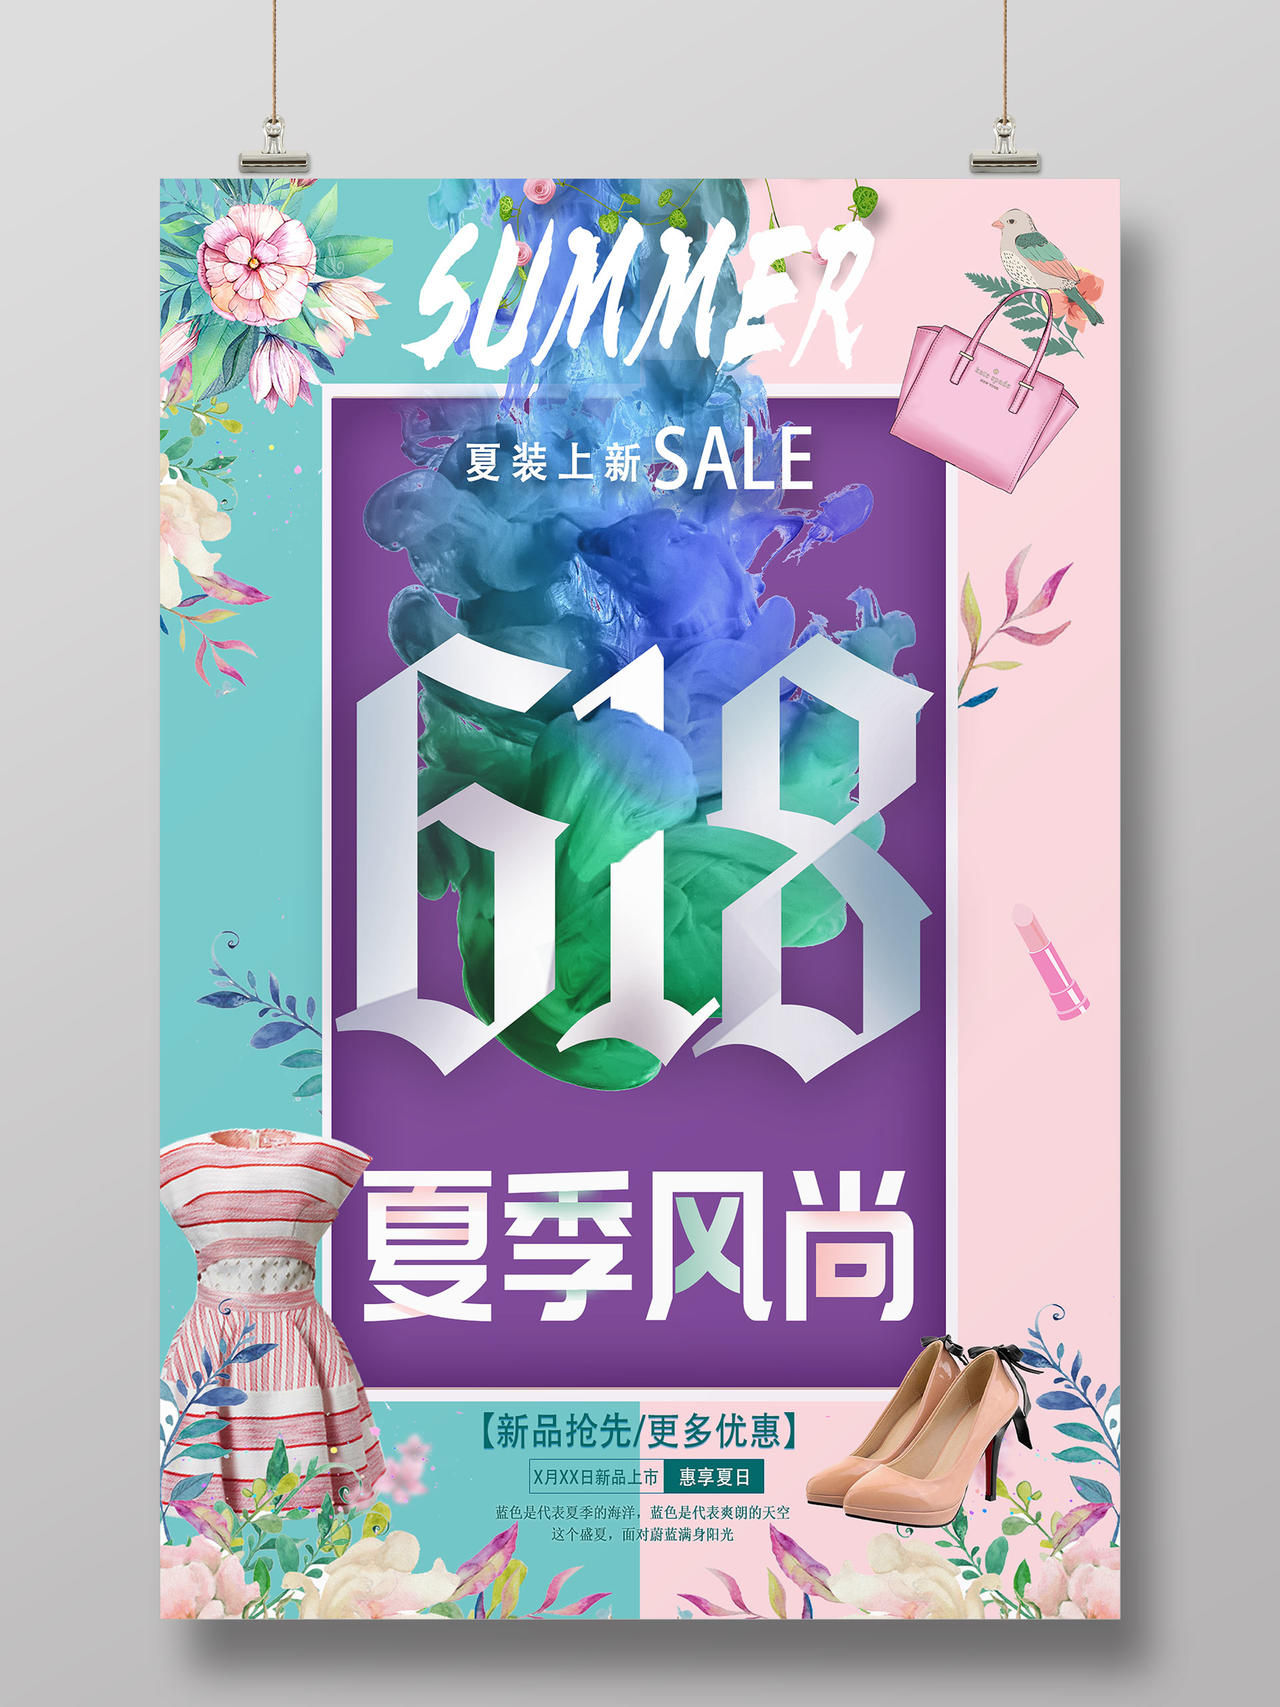 蓝粉色创意618夏季风尚618年中大促服装女装宣传海报